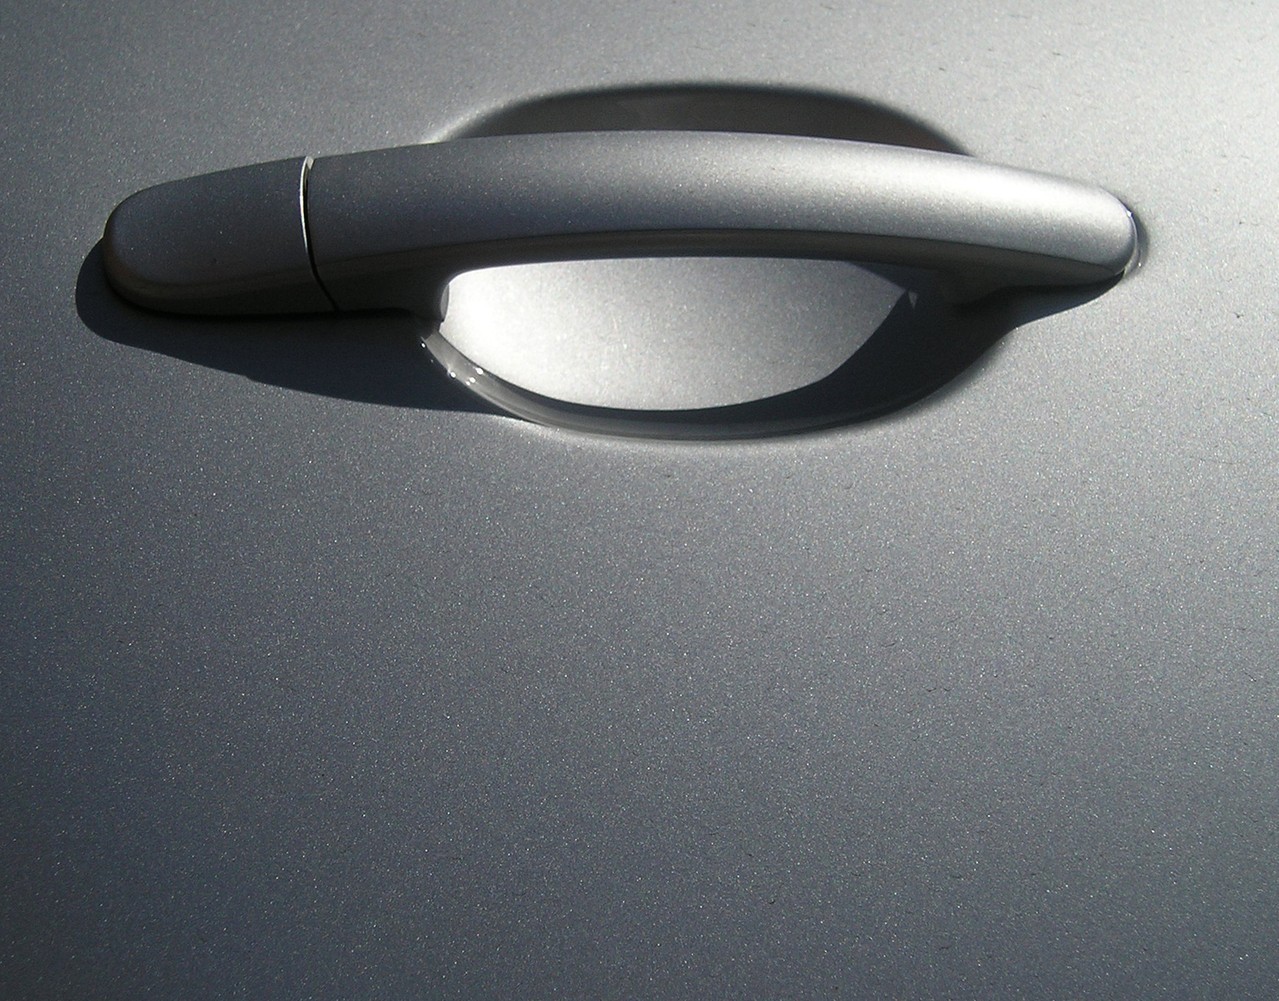 Bezpieczeństwo samochodów pod lupą Euro NCAP